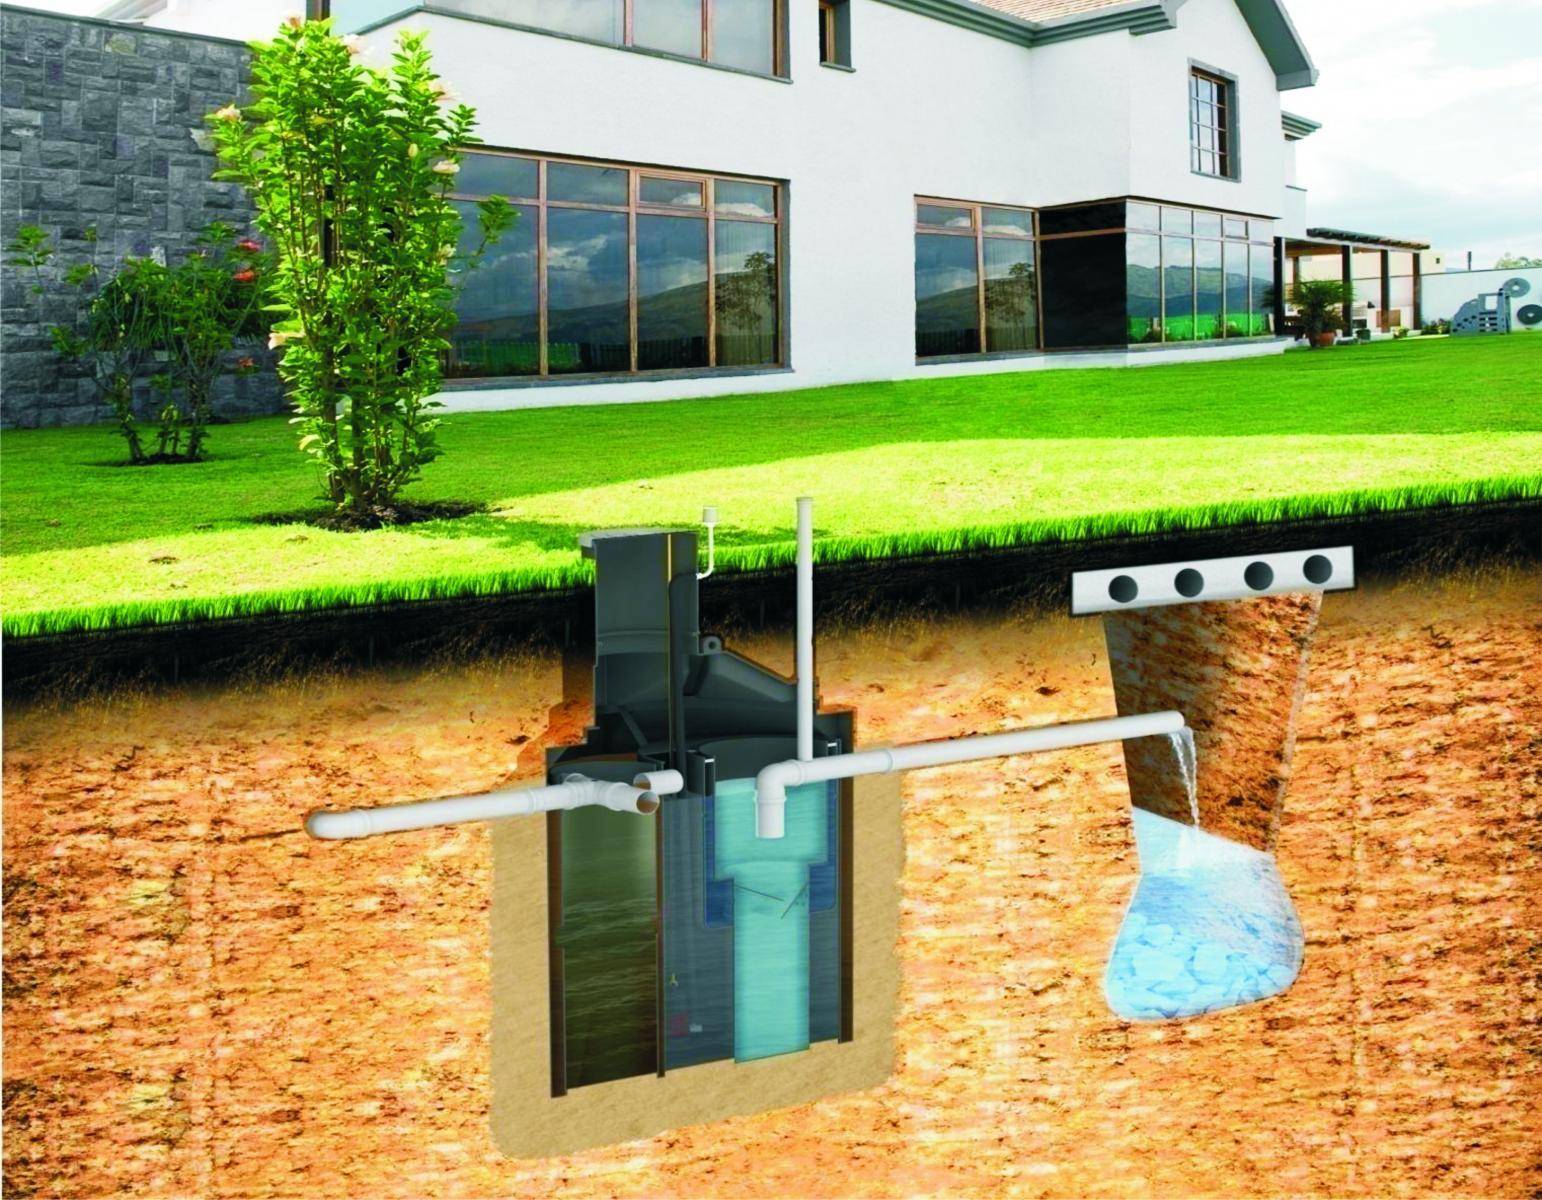 Монтаж канализации в частном доме своими руками: основные этапы и нюансы | септик клён официальный сайт производителя!